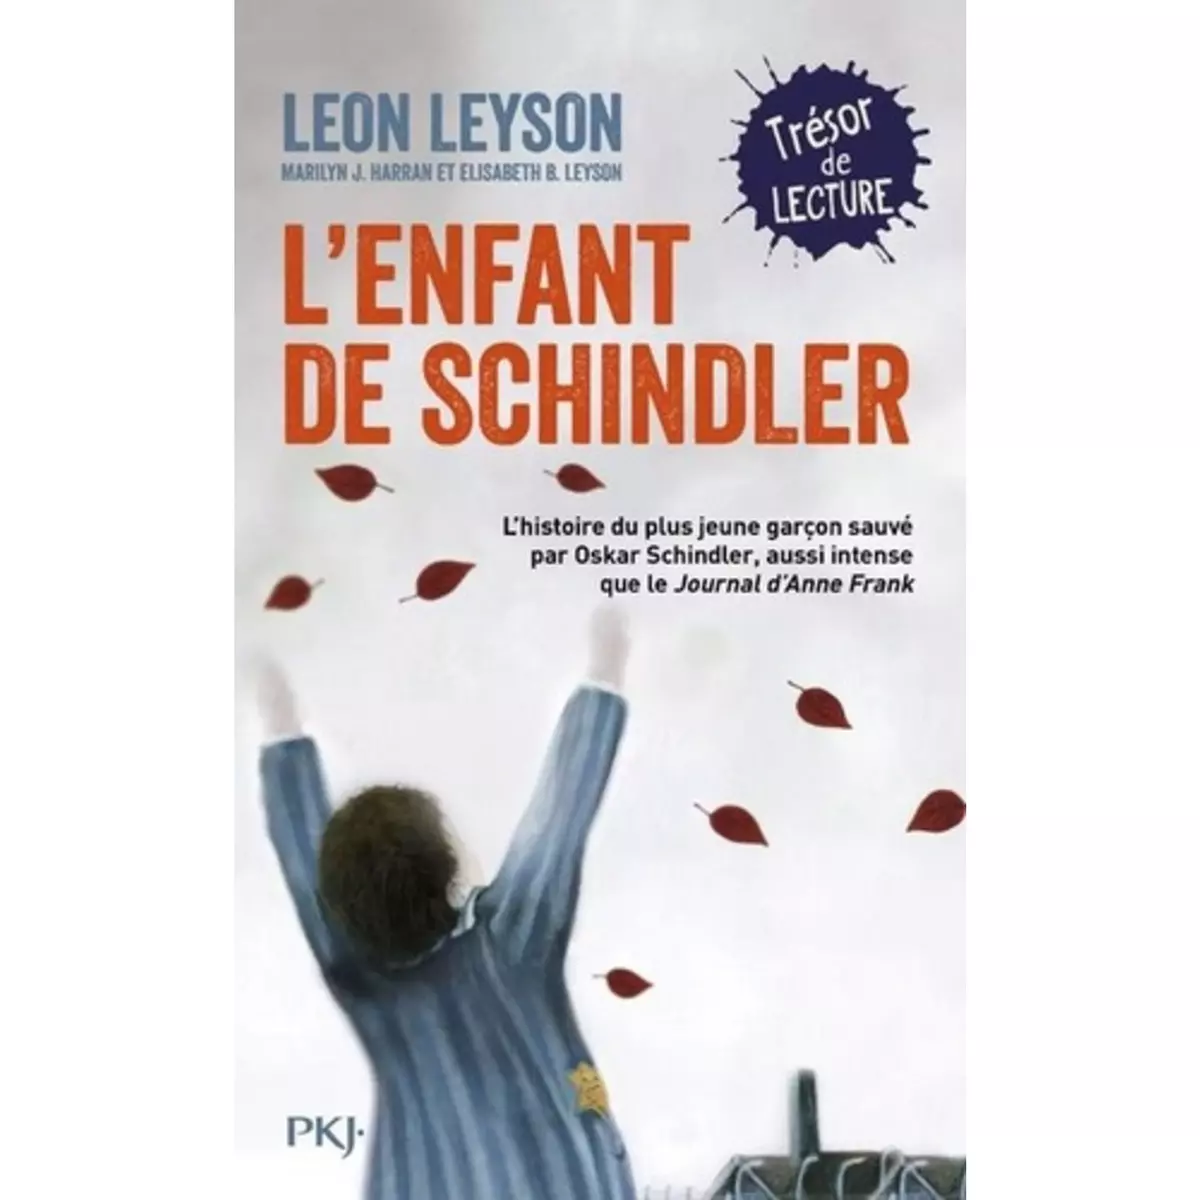  L'ENFANT DE SCHINDLER, Leyson Leon